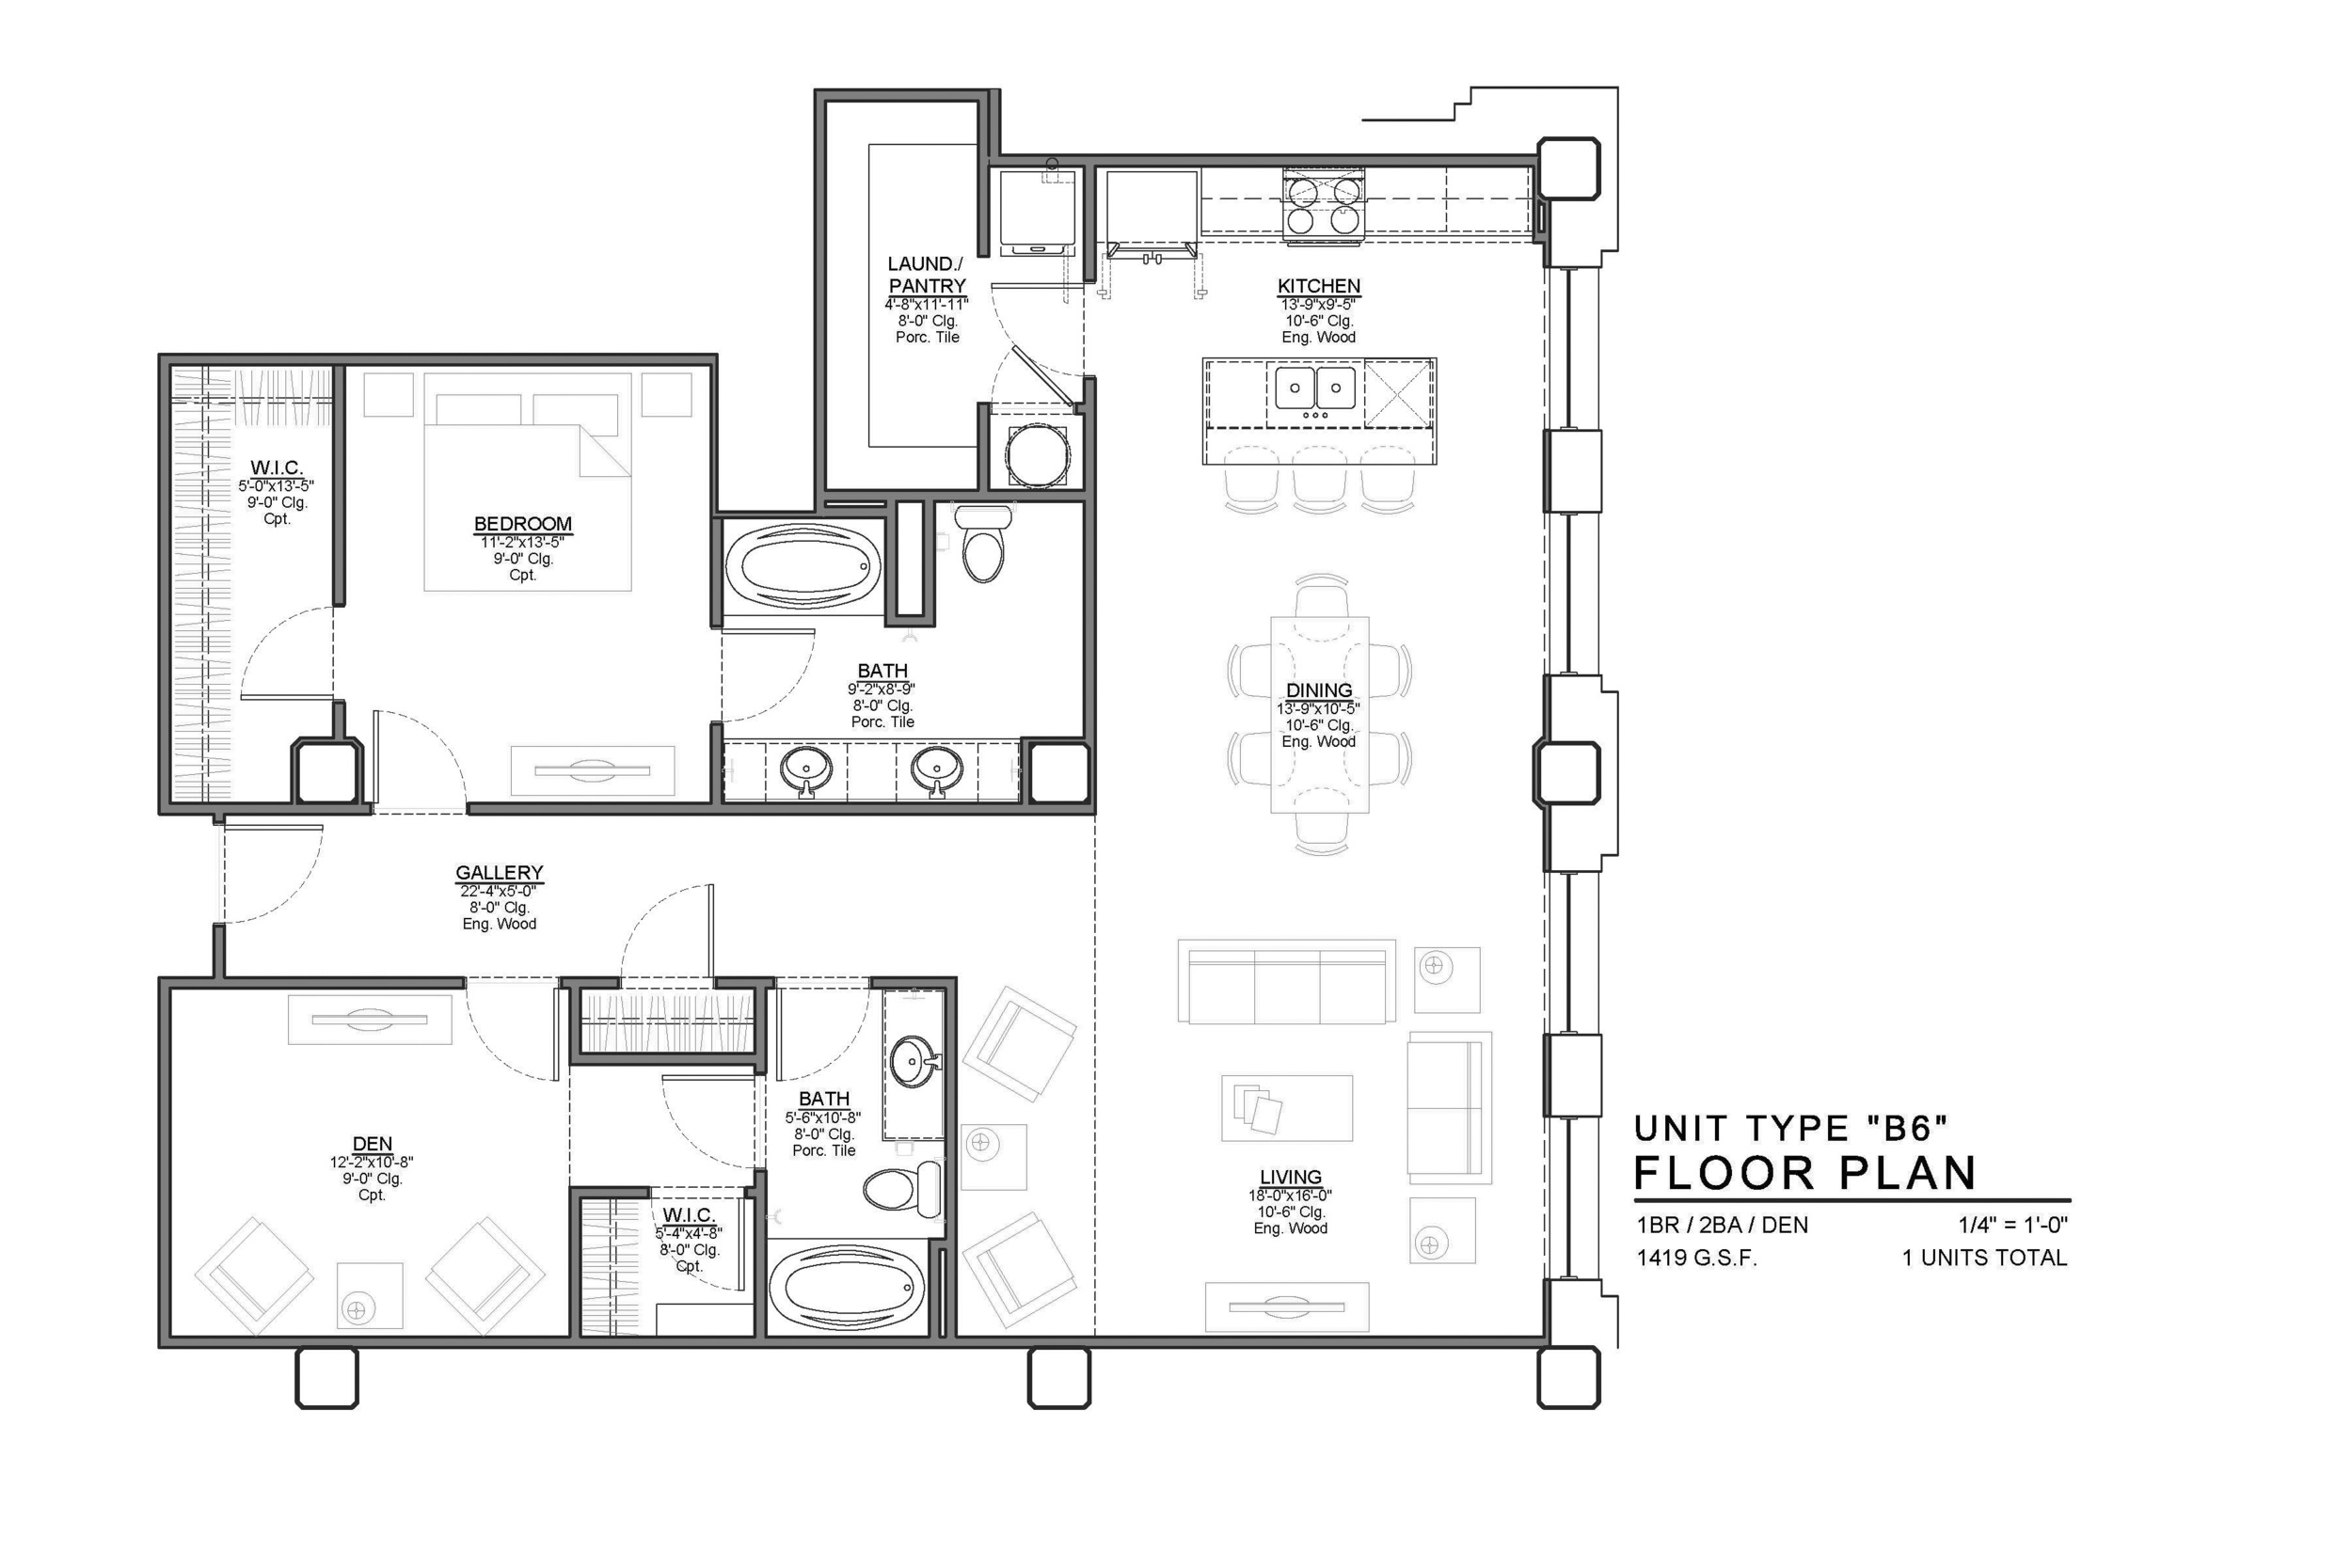 B6 FLOOR PLAN: 1 BEDROOM / 2 BATH / DEN